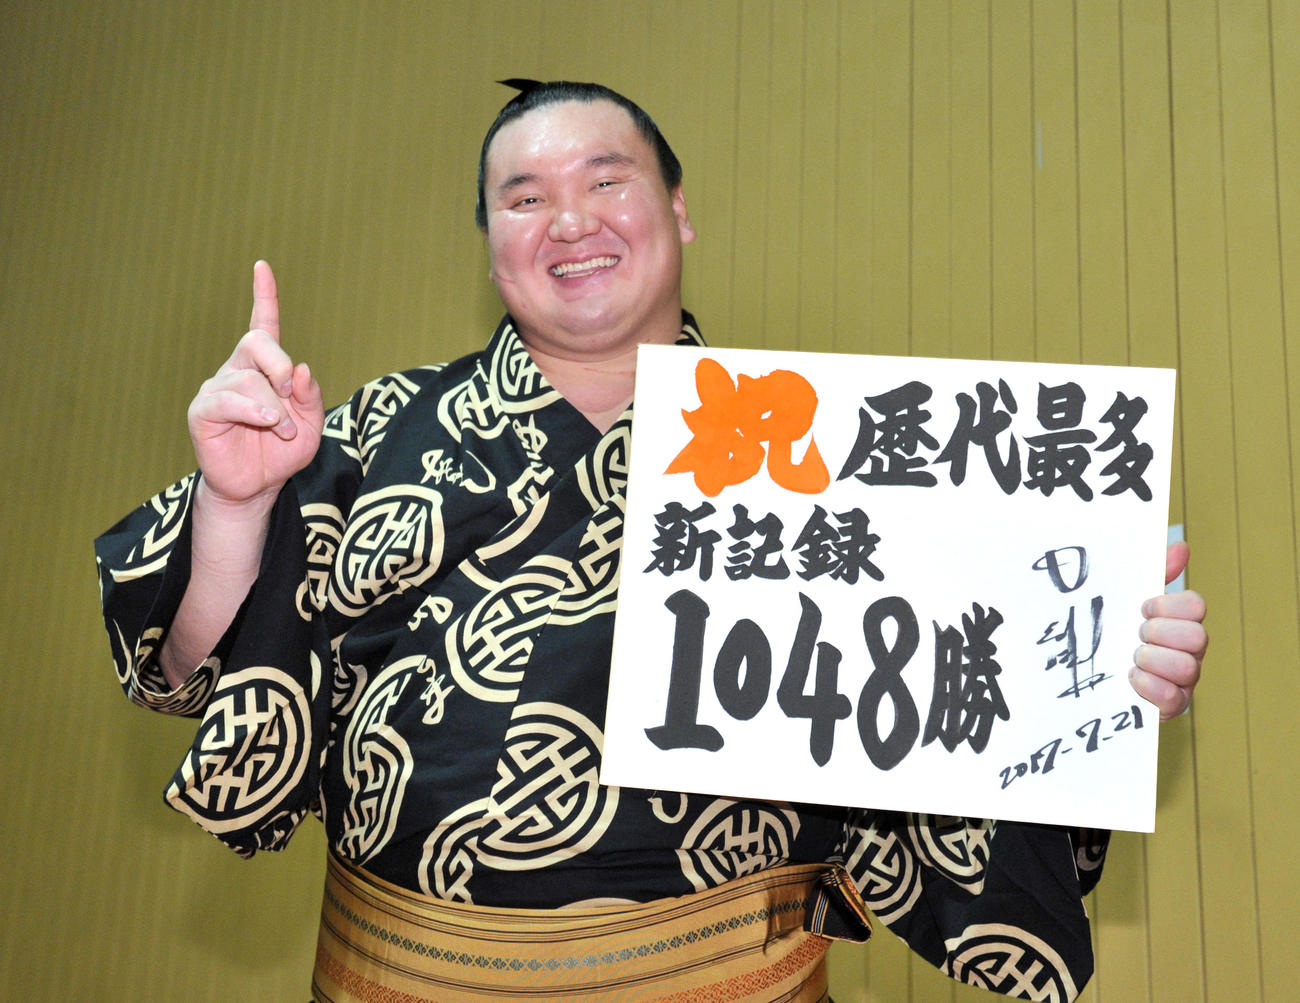 17年7月、大相撲で単独史上1位の通算1048勝目を挙げて笑顔でポーズする白鵬